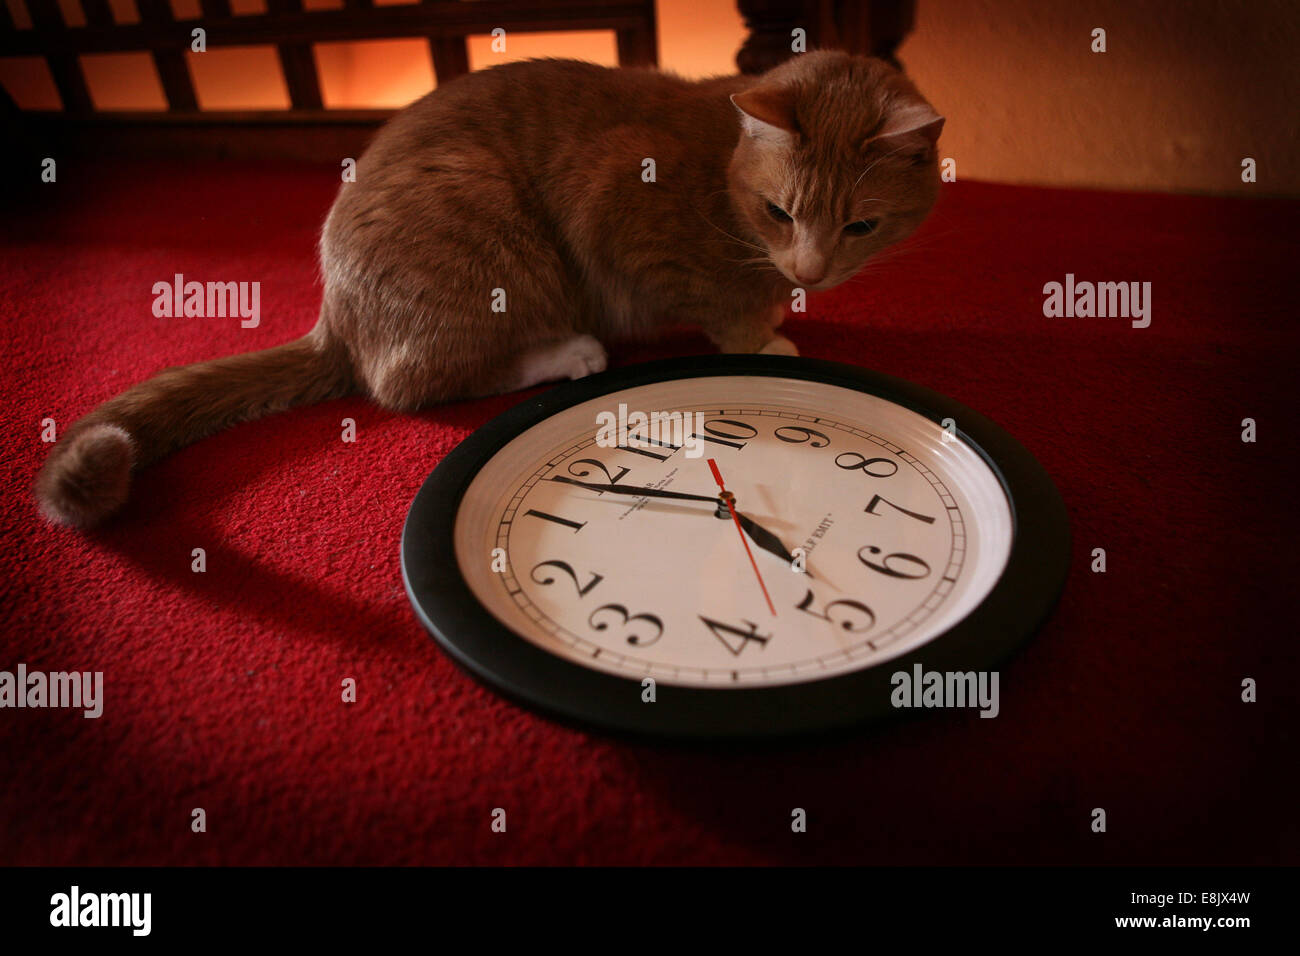 Anti clockwise immagini e fotografie stock ad alta risoluzione - Alamy